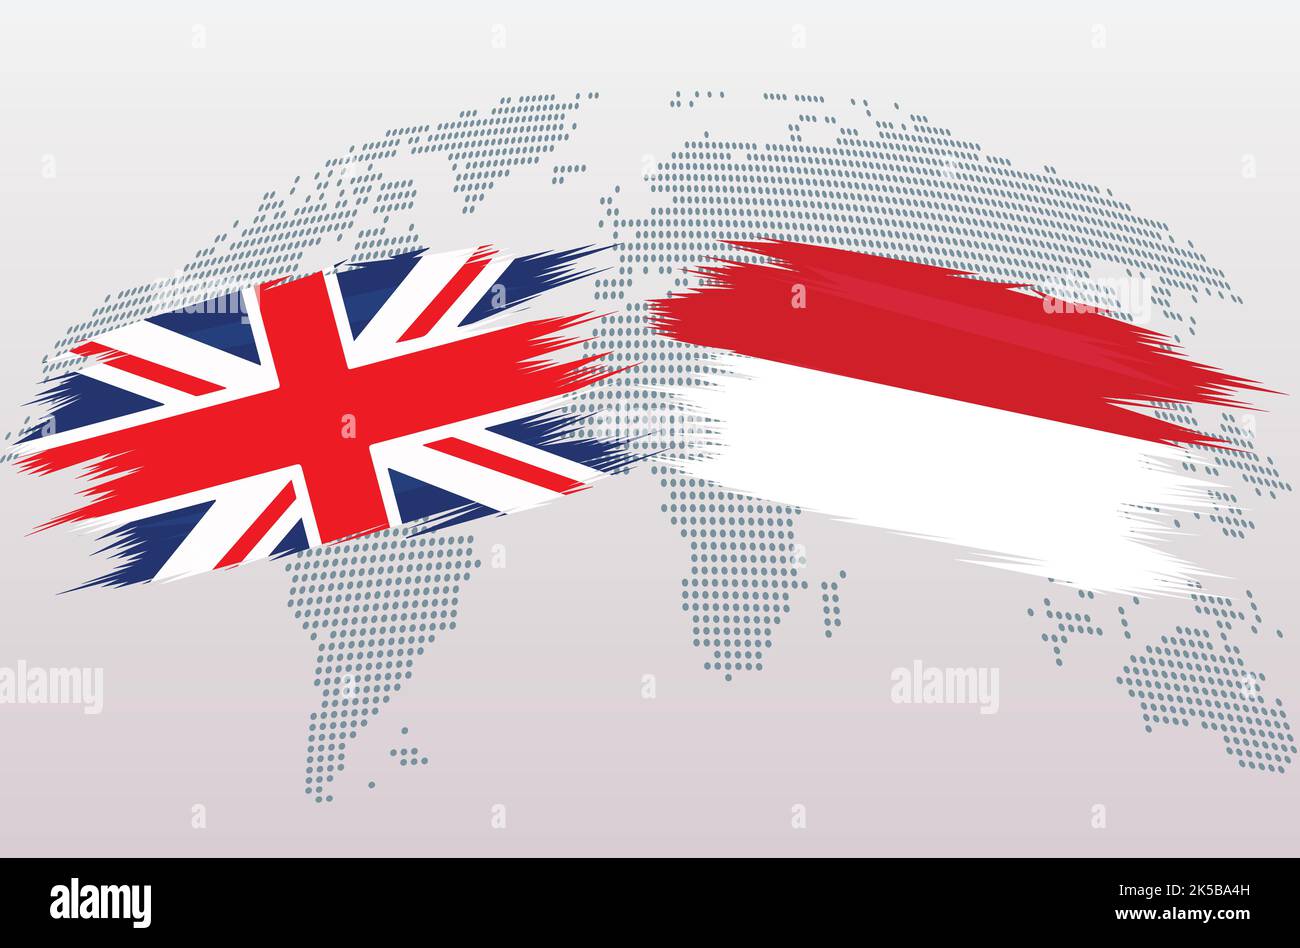 Bandiere britanniche e indonesiane. Bandiere del Regno Unito e indonesiane, isolate su sfondo grigio della mappa mondiale. Illustrazione vettoriale. Illustrazione Vettoriale